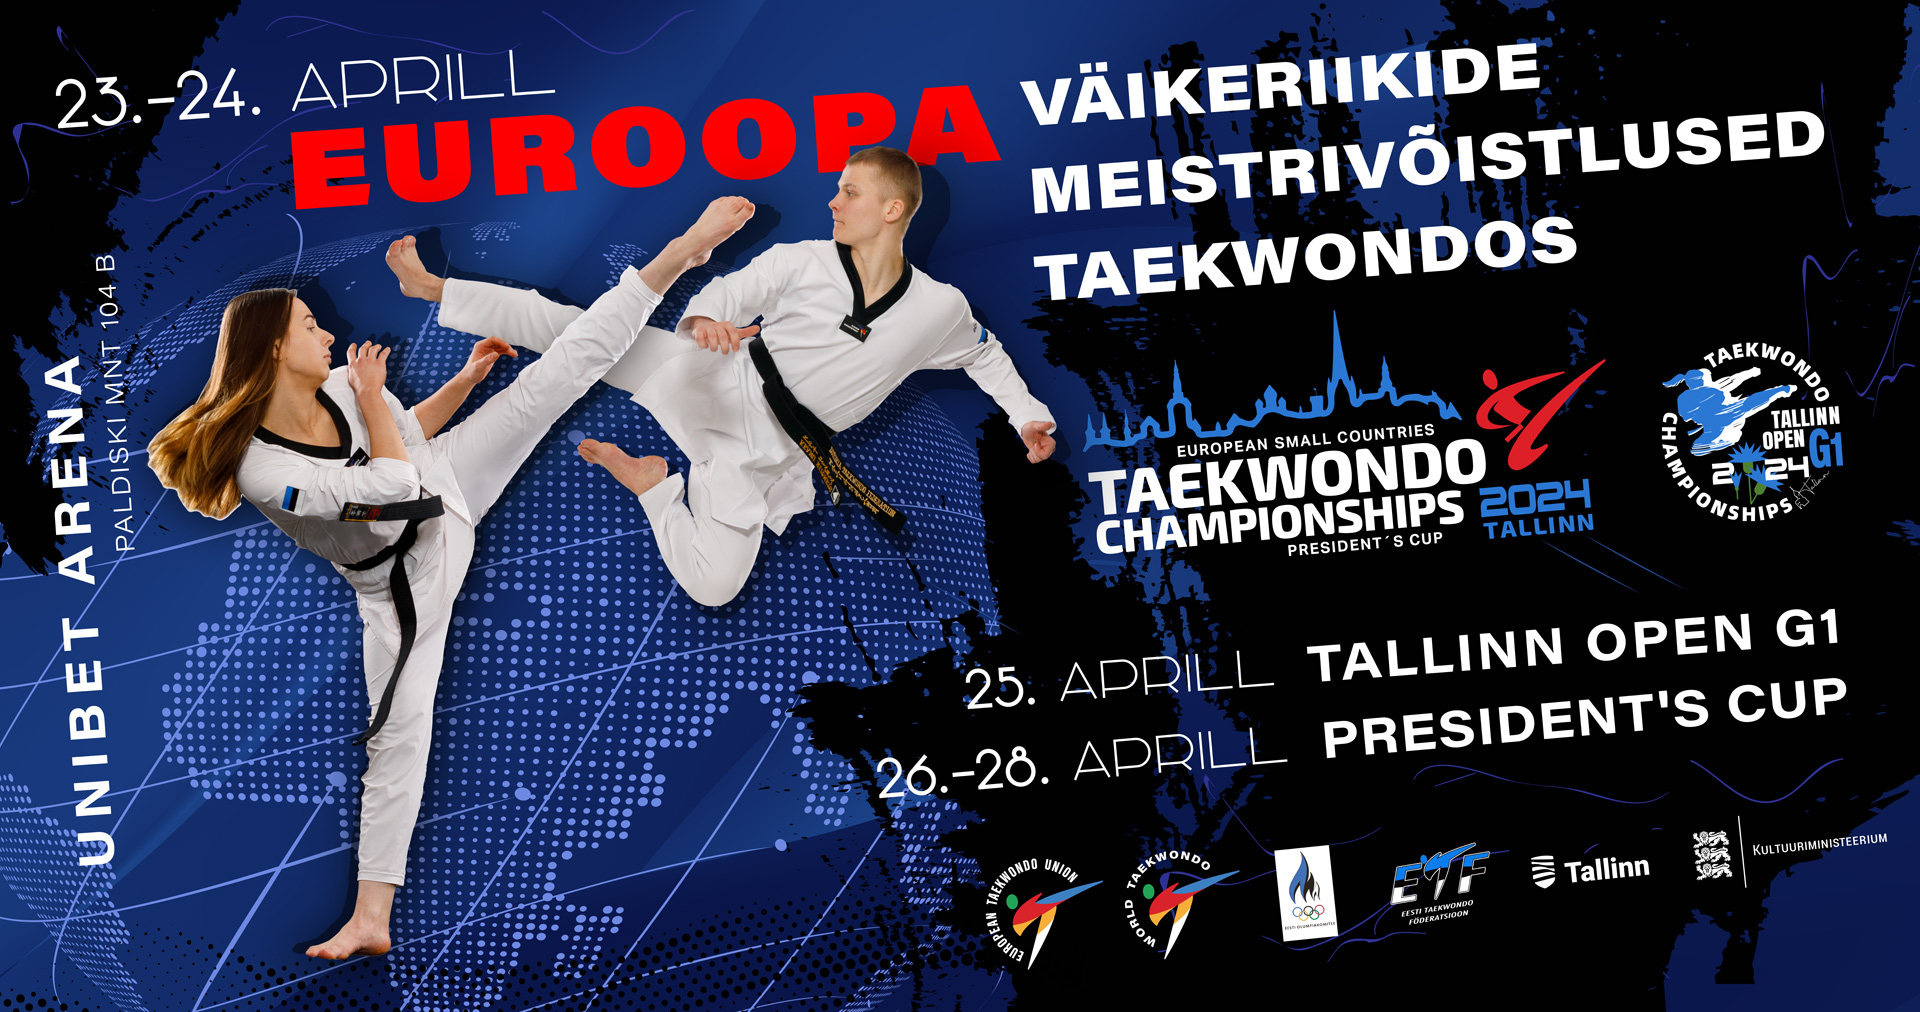 Tallinnas toimuvatel meistrivõistlustel taekwondos on esindatud sportlased 64 riigist